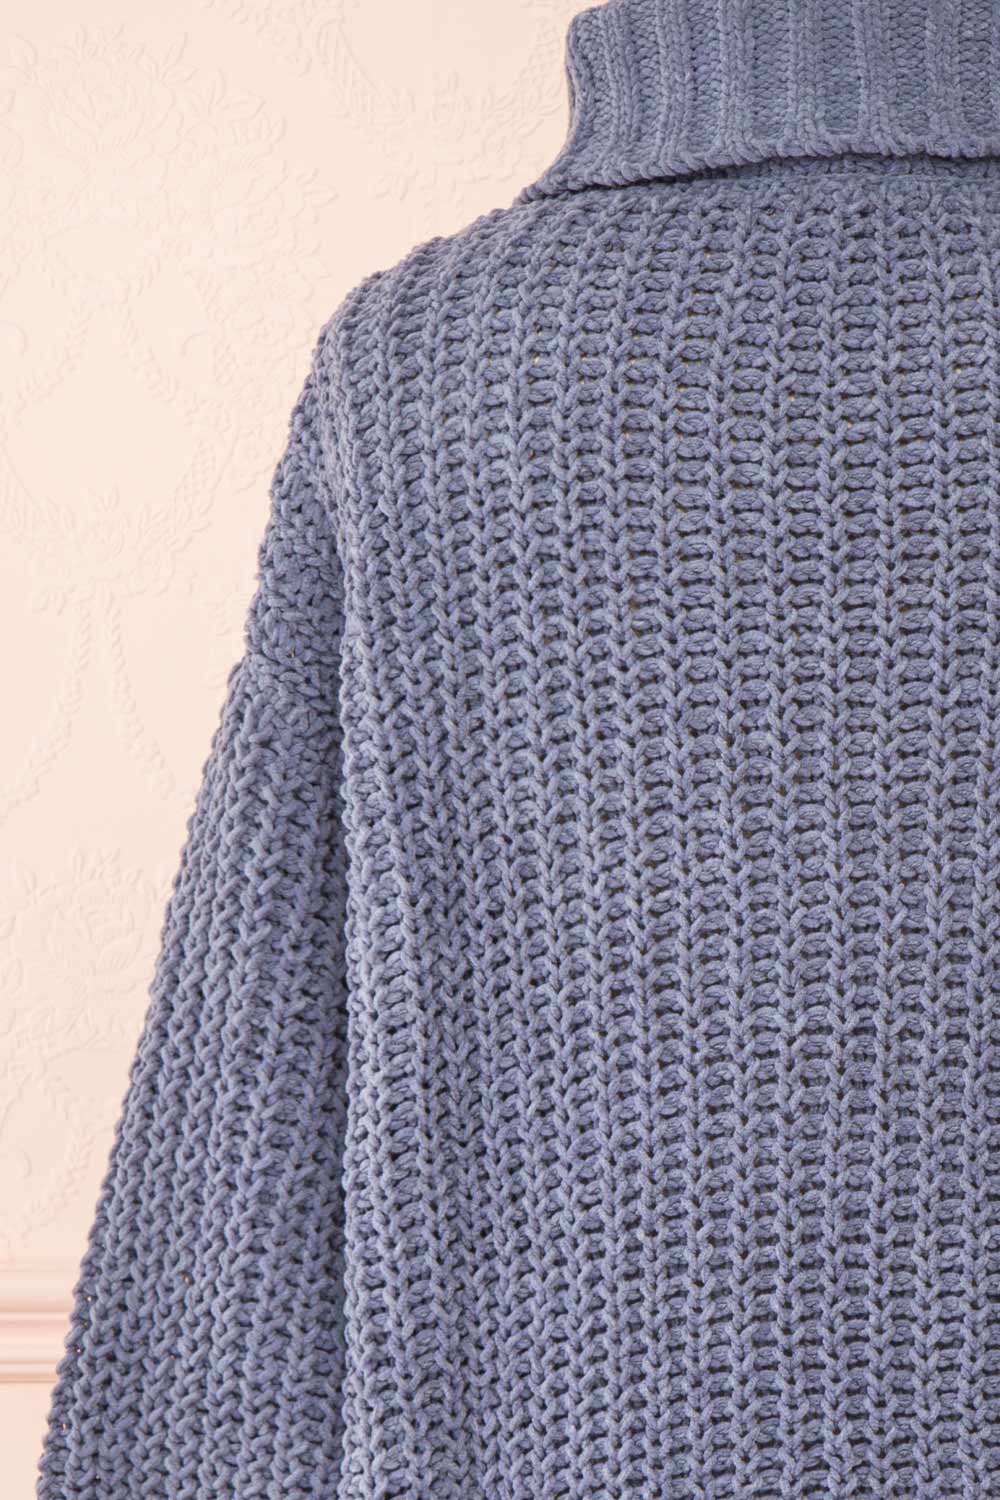 Irma Blue Turtleneck Knit Sweater | La petite garçonne back close-up